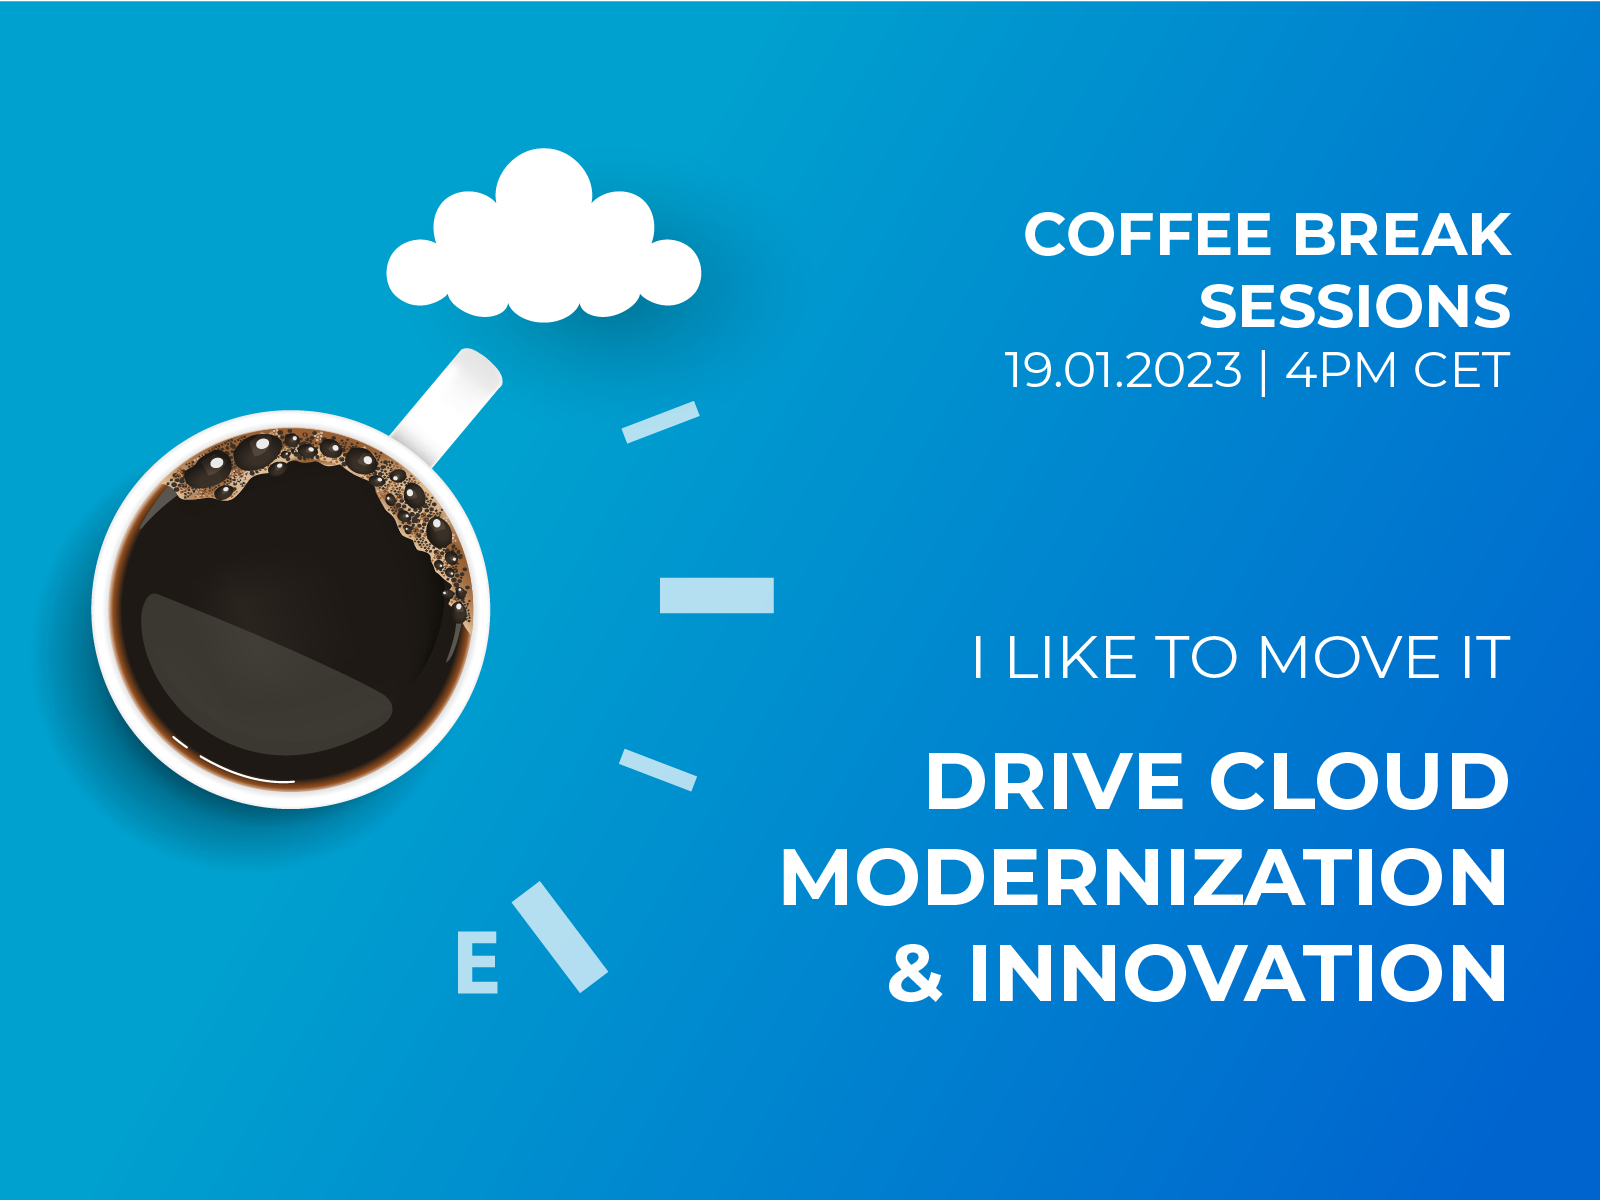 I like to move it: Drive cloud modernization and innovation